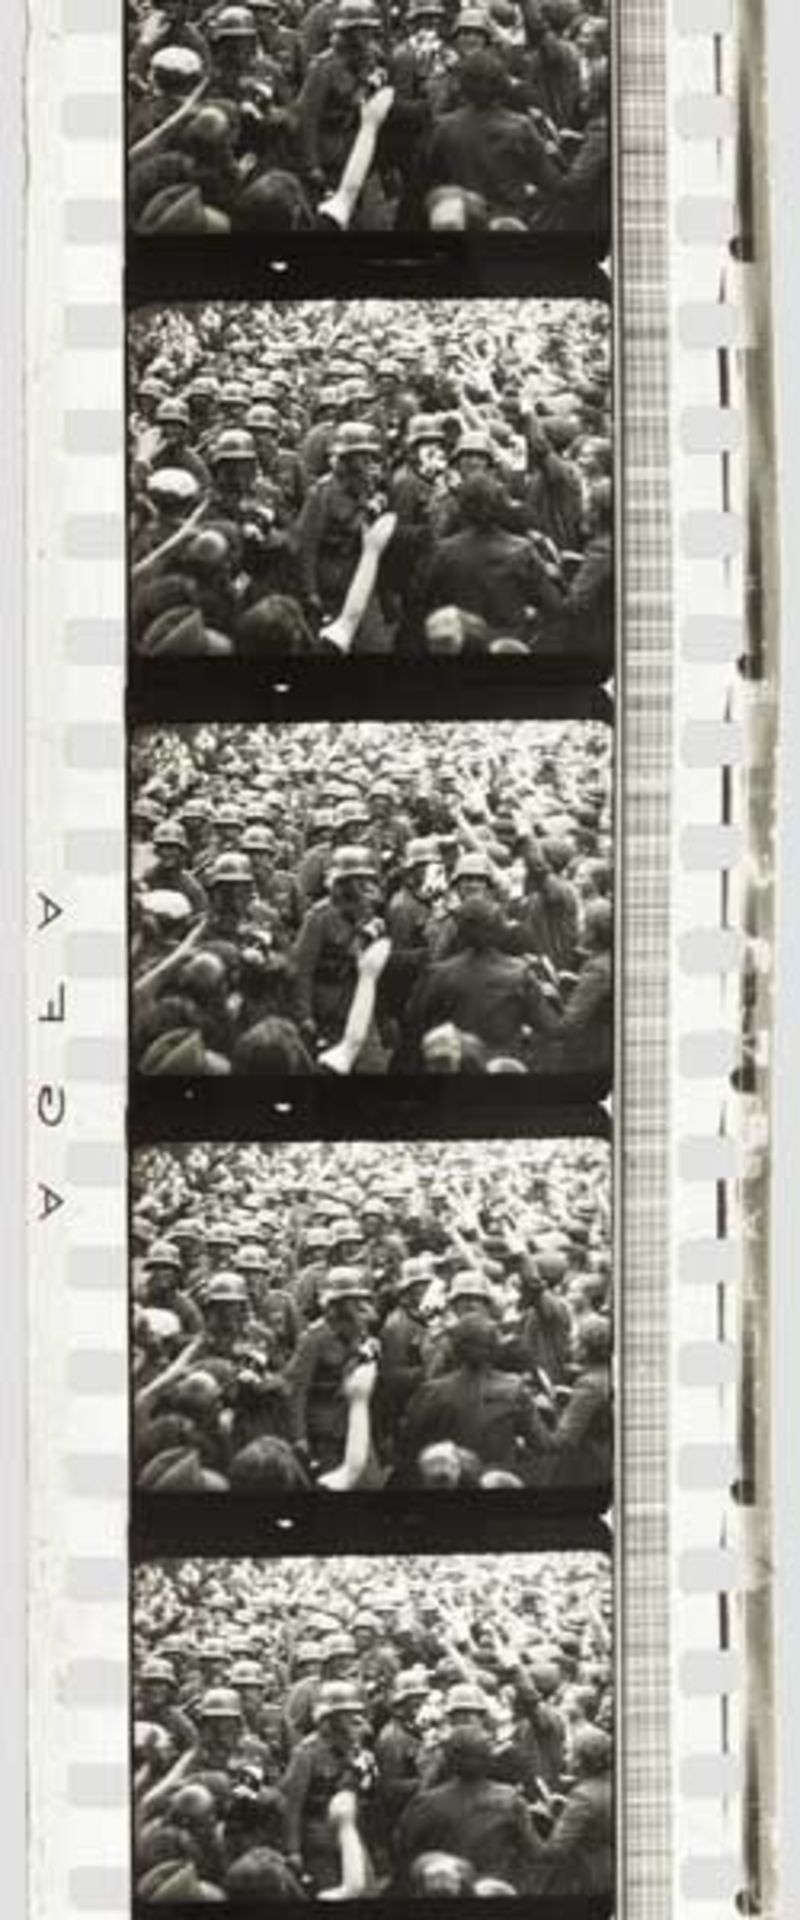 35 mm-Film Polenfeldzug 1939, Fotos, Dokumente AGFA-Film auf 35 mm-Streifen, mit Lichttonspur!, s/w, - Bild 3 aus 3